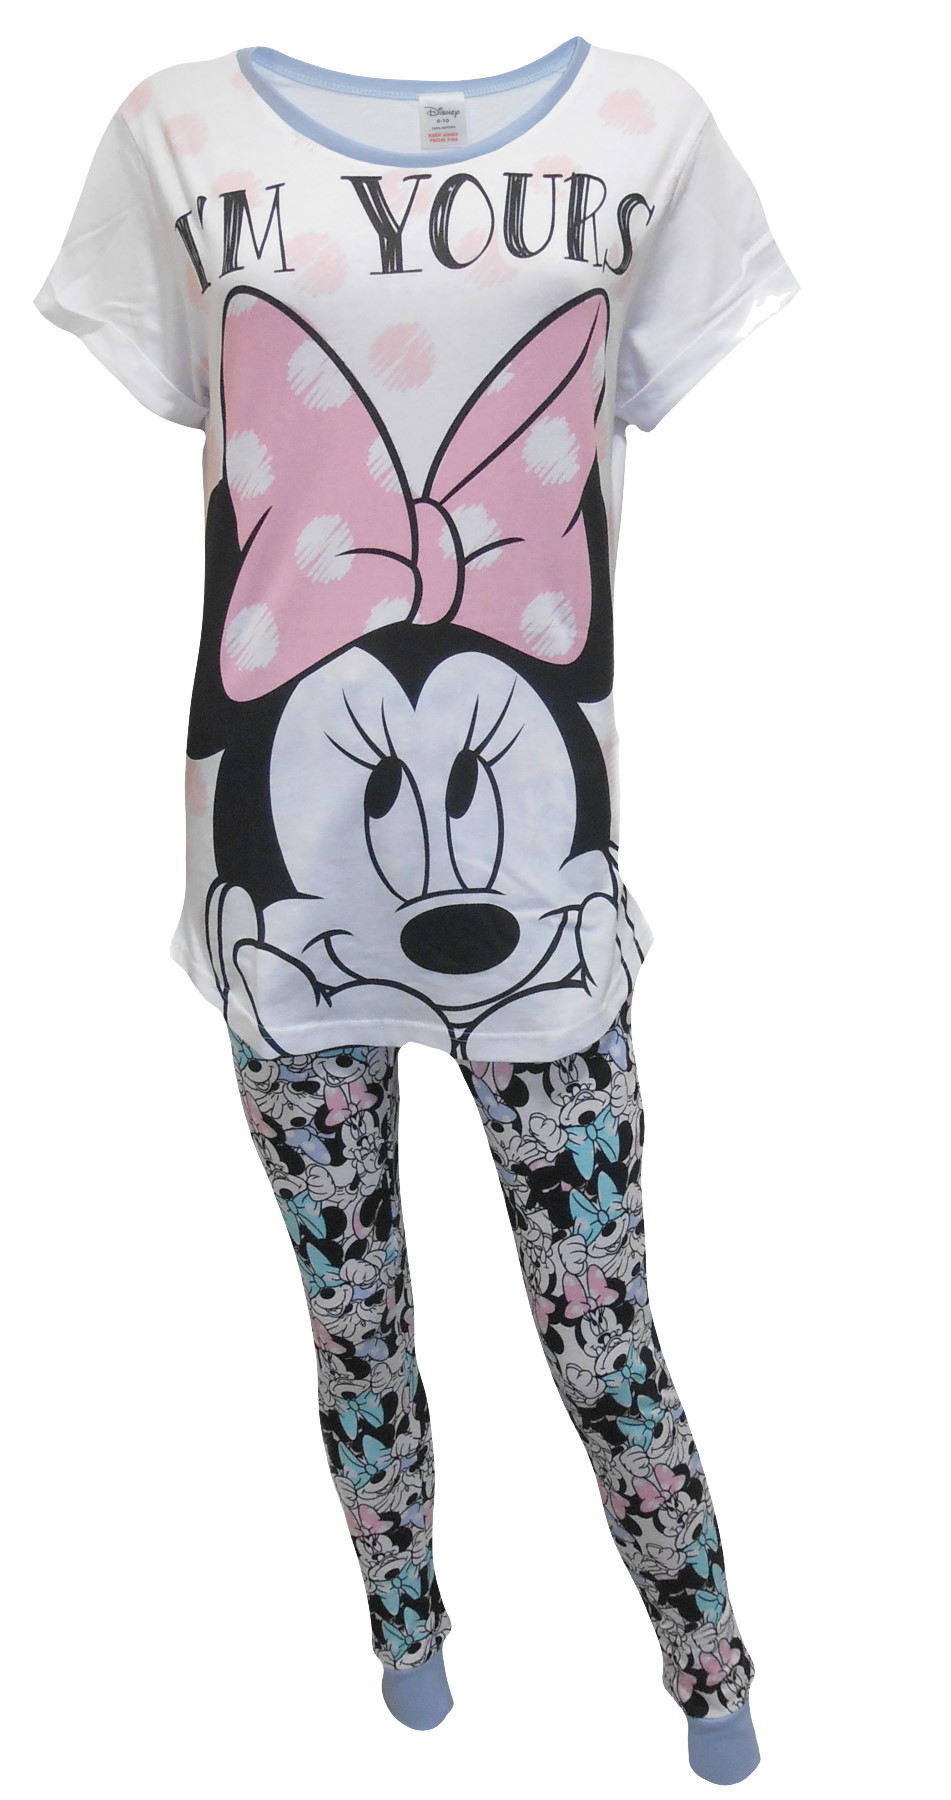 Minnie Mouse Pyjamas PJ76 (1).JPG  by Thingimijigs